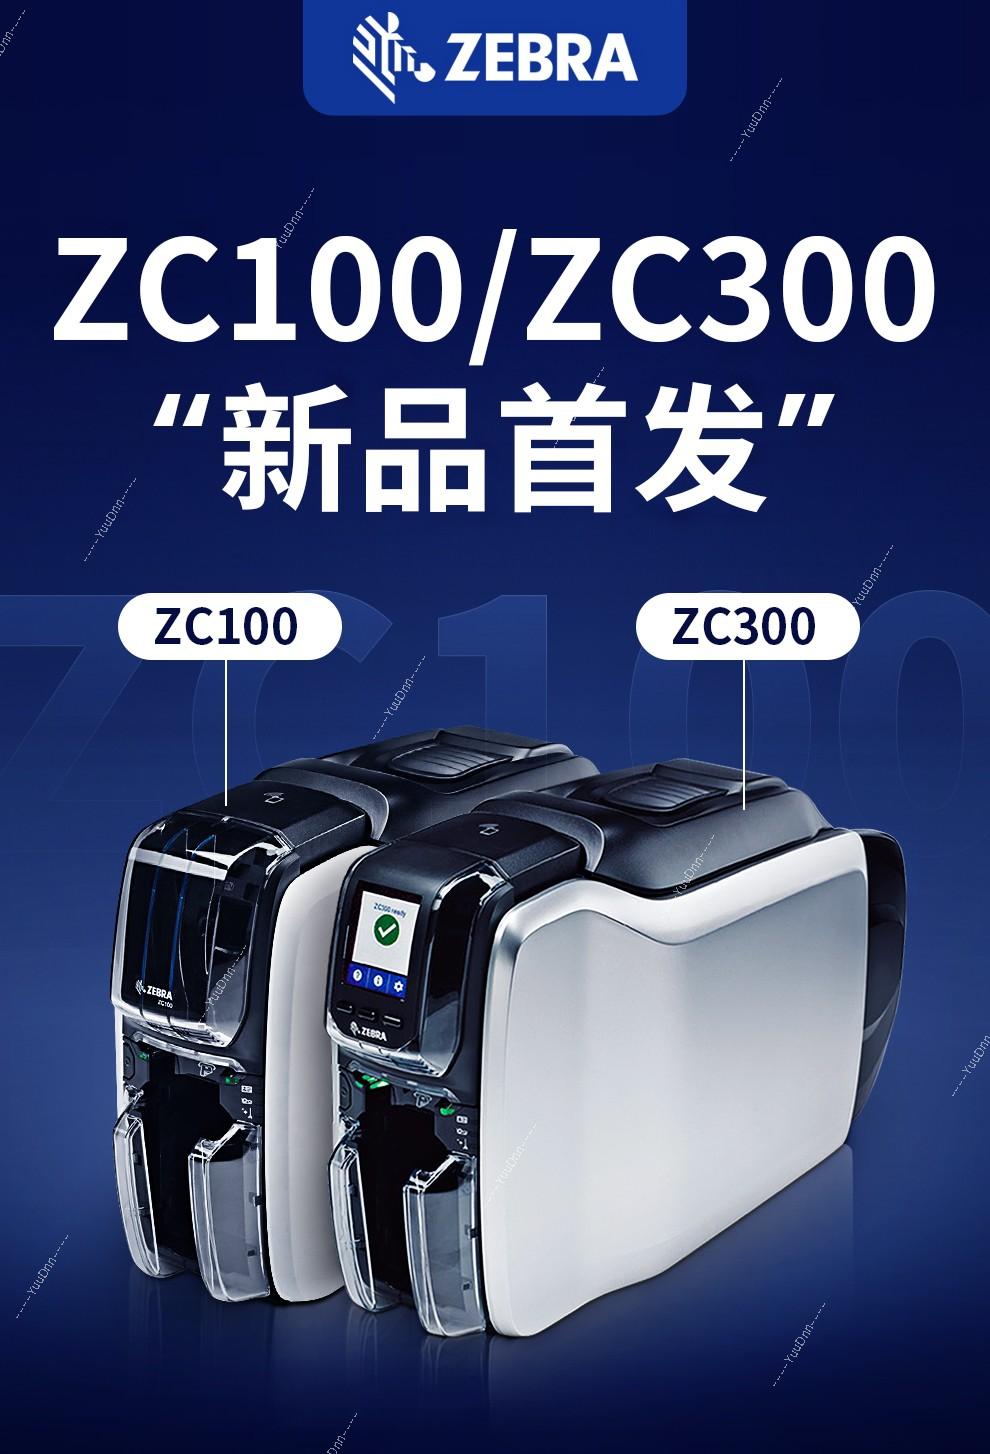 斑马 Zebra ZC300 证卡打印机